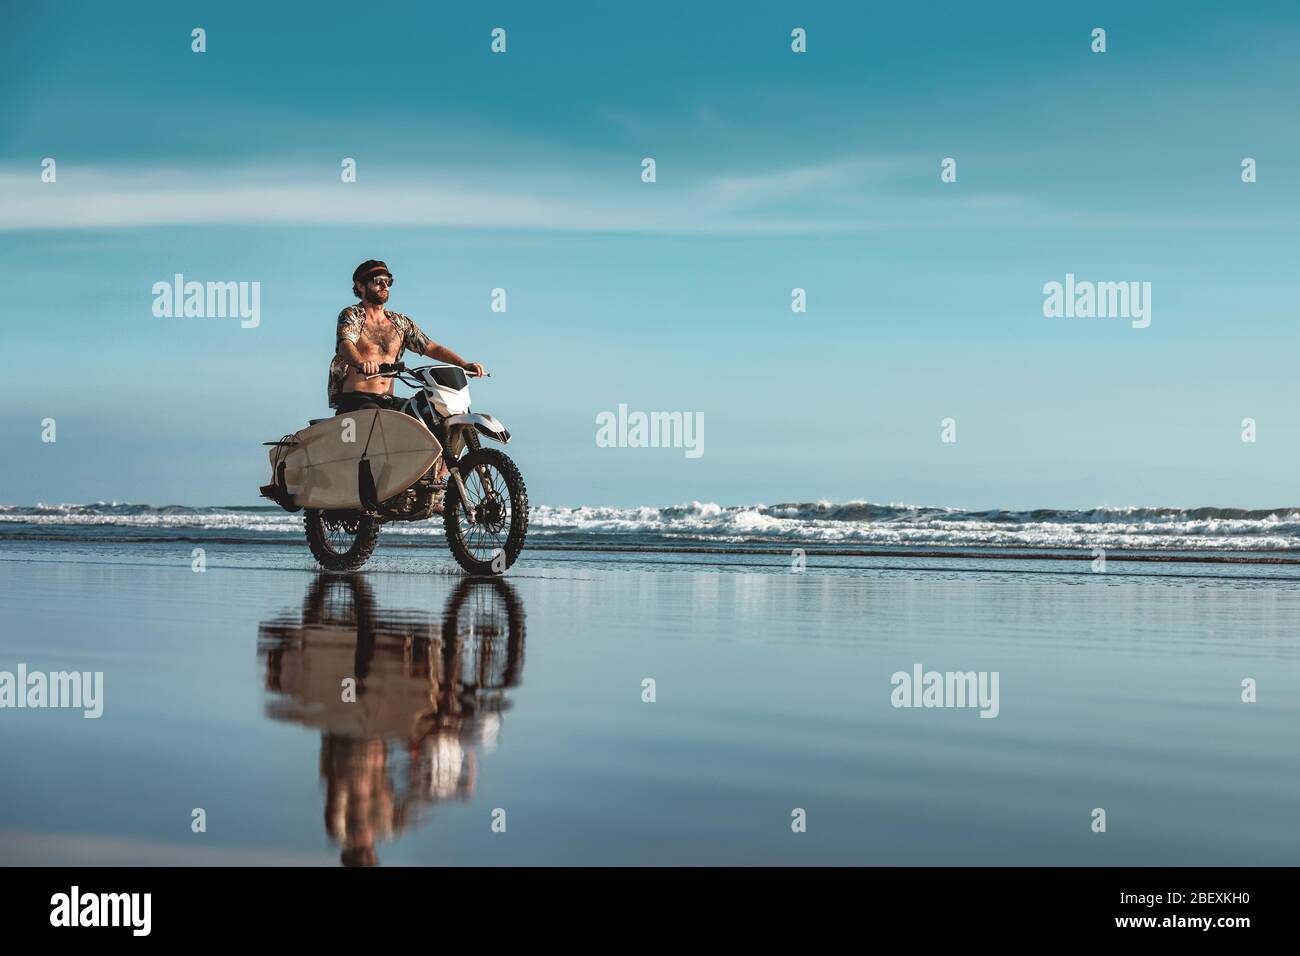 Echte Bali Male Surfer fährt auf Motorrad mit Surfbrett am Meeresstrand Stockfoto